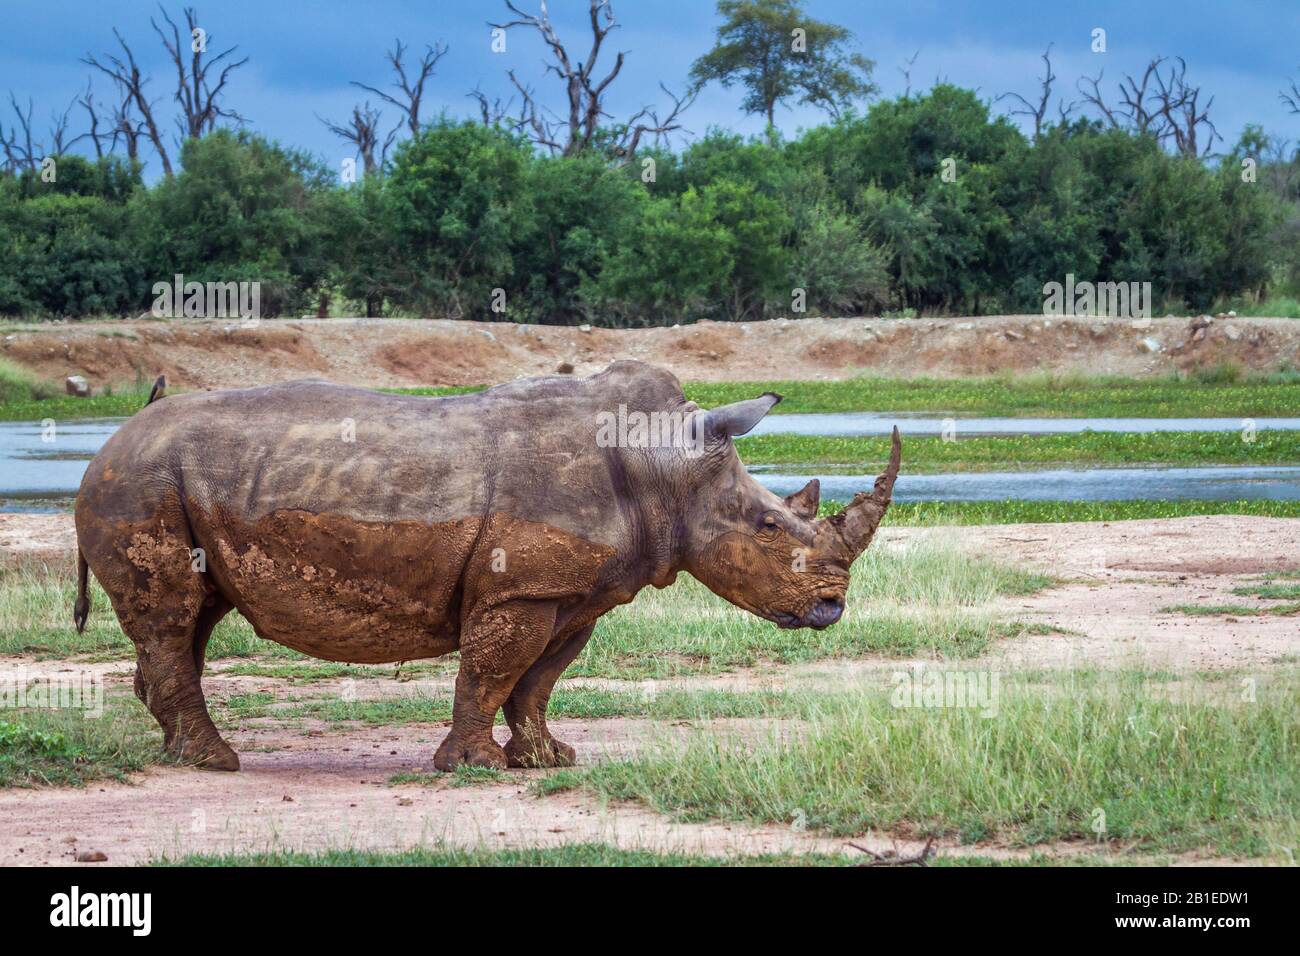 Rinoceronte blanco del sur (Ceratotherium simum simum) con vista angular en el Parque Nacional Real de Hlane, paisaje de Swazilandia Foto de stock